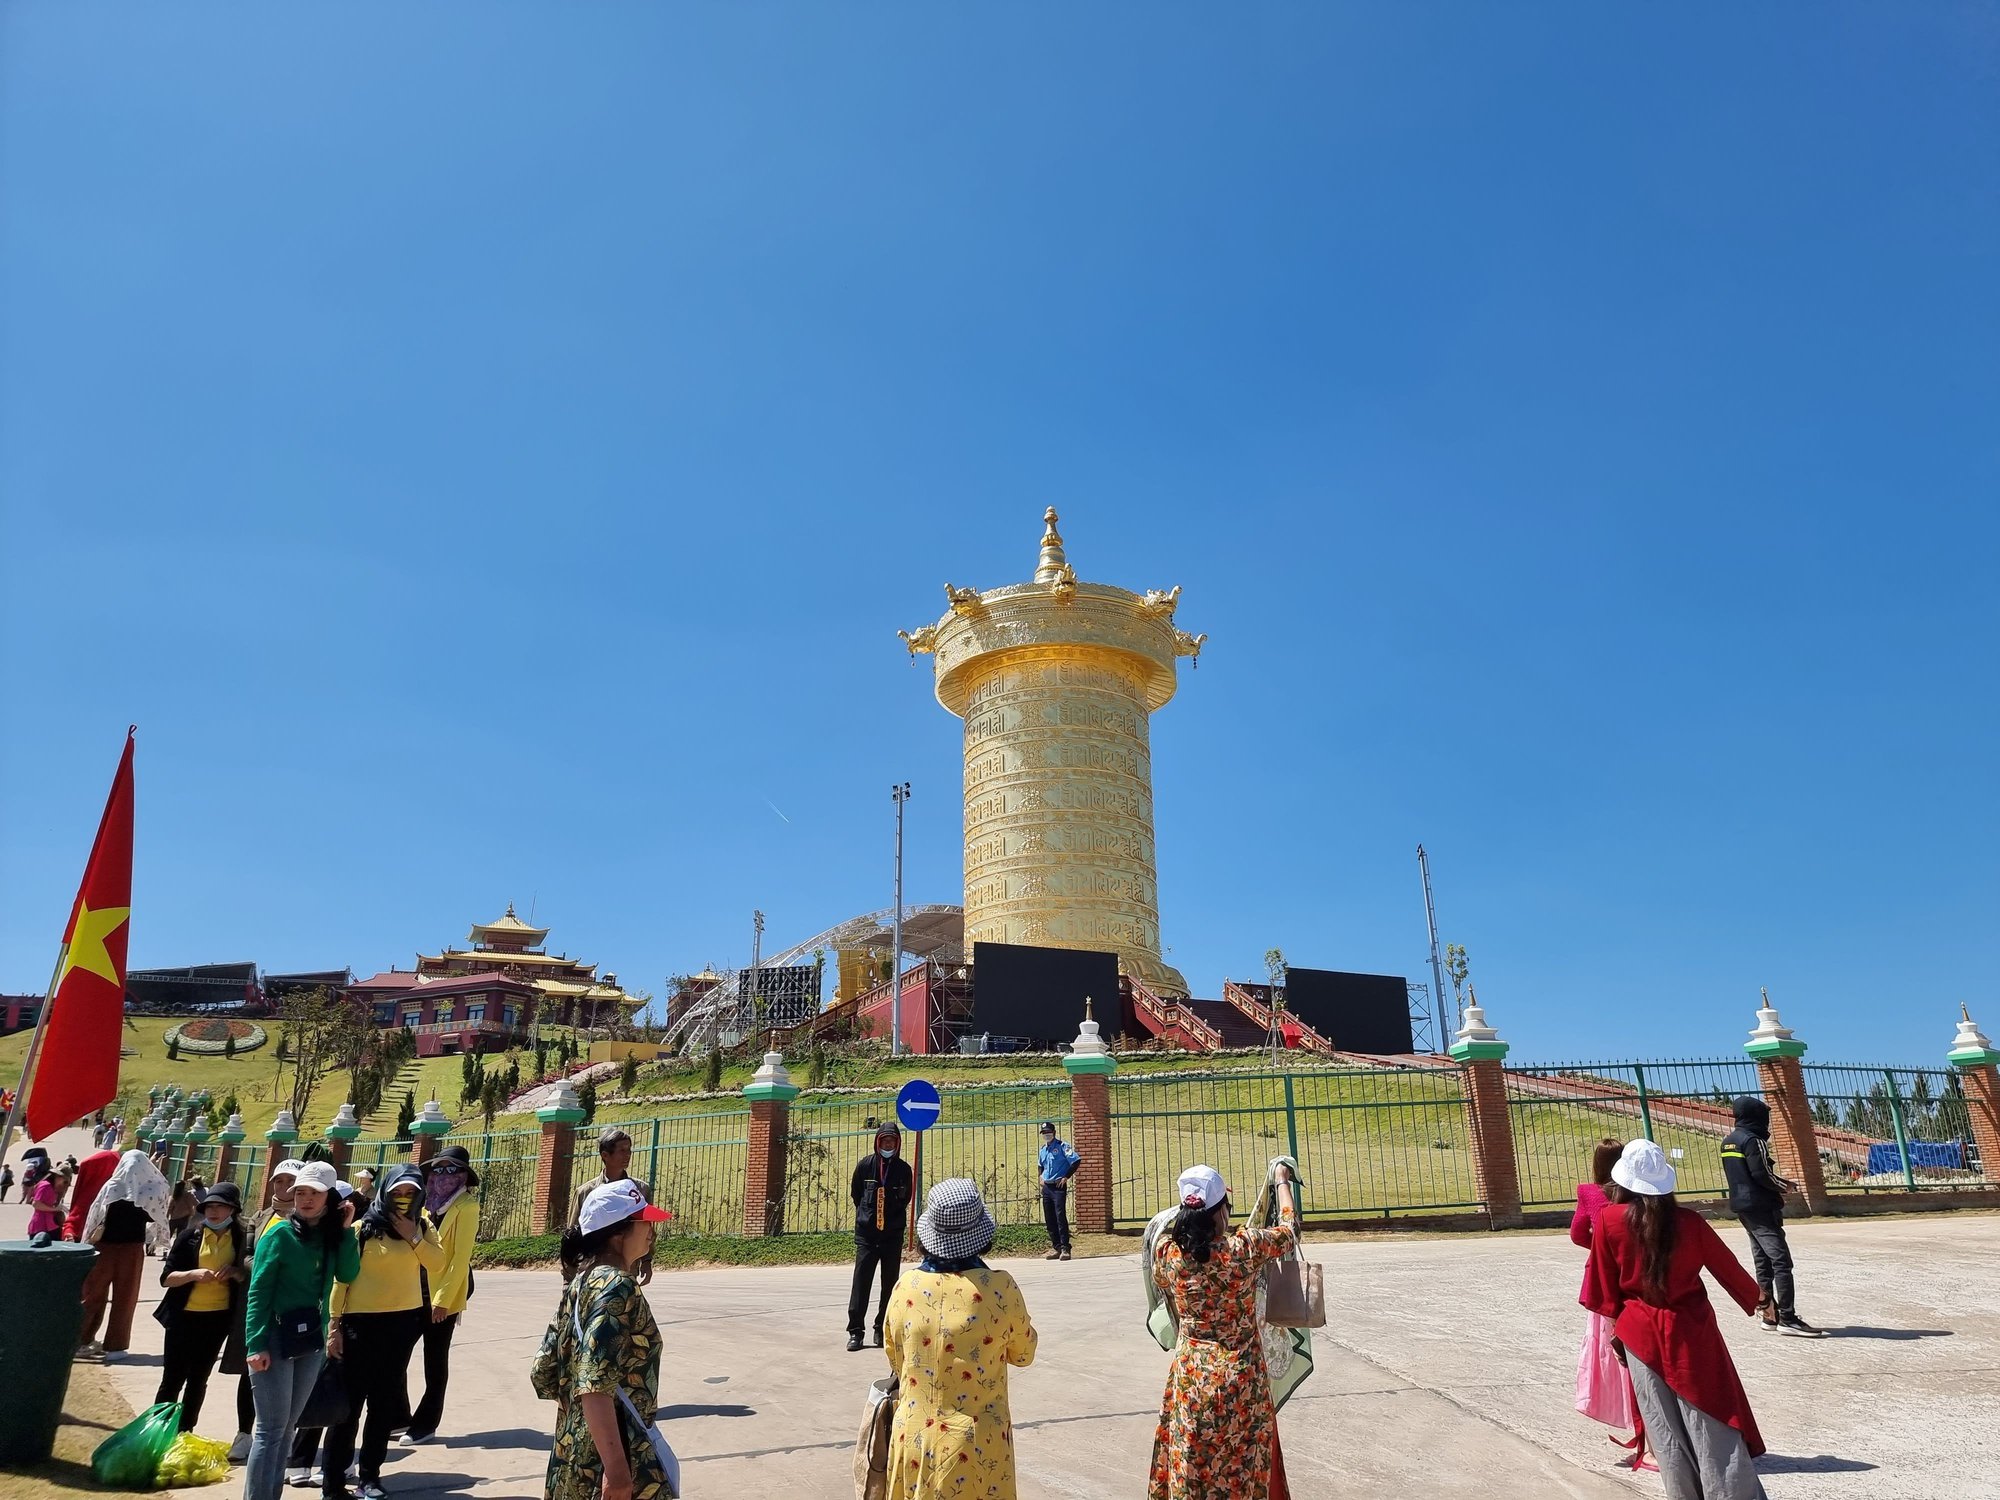 Cận cảnh đại bảo tháp kinh luân dát vàng 24k lớn nhất thế giới tại Lâm Đồng - Ảnh 9.